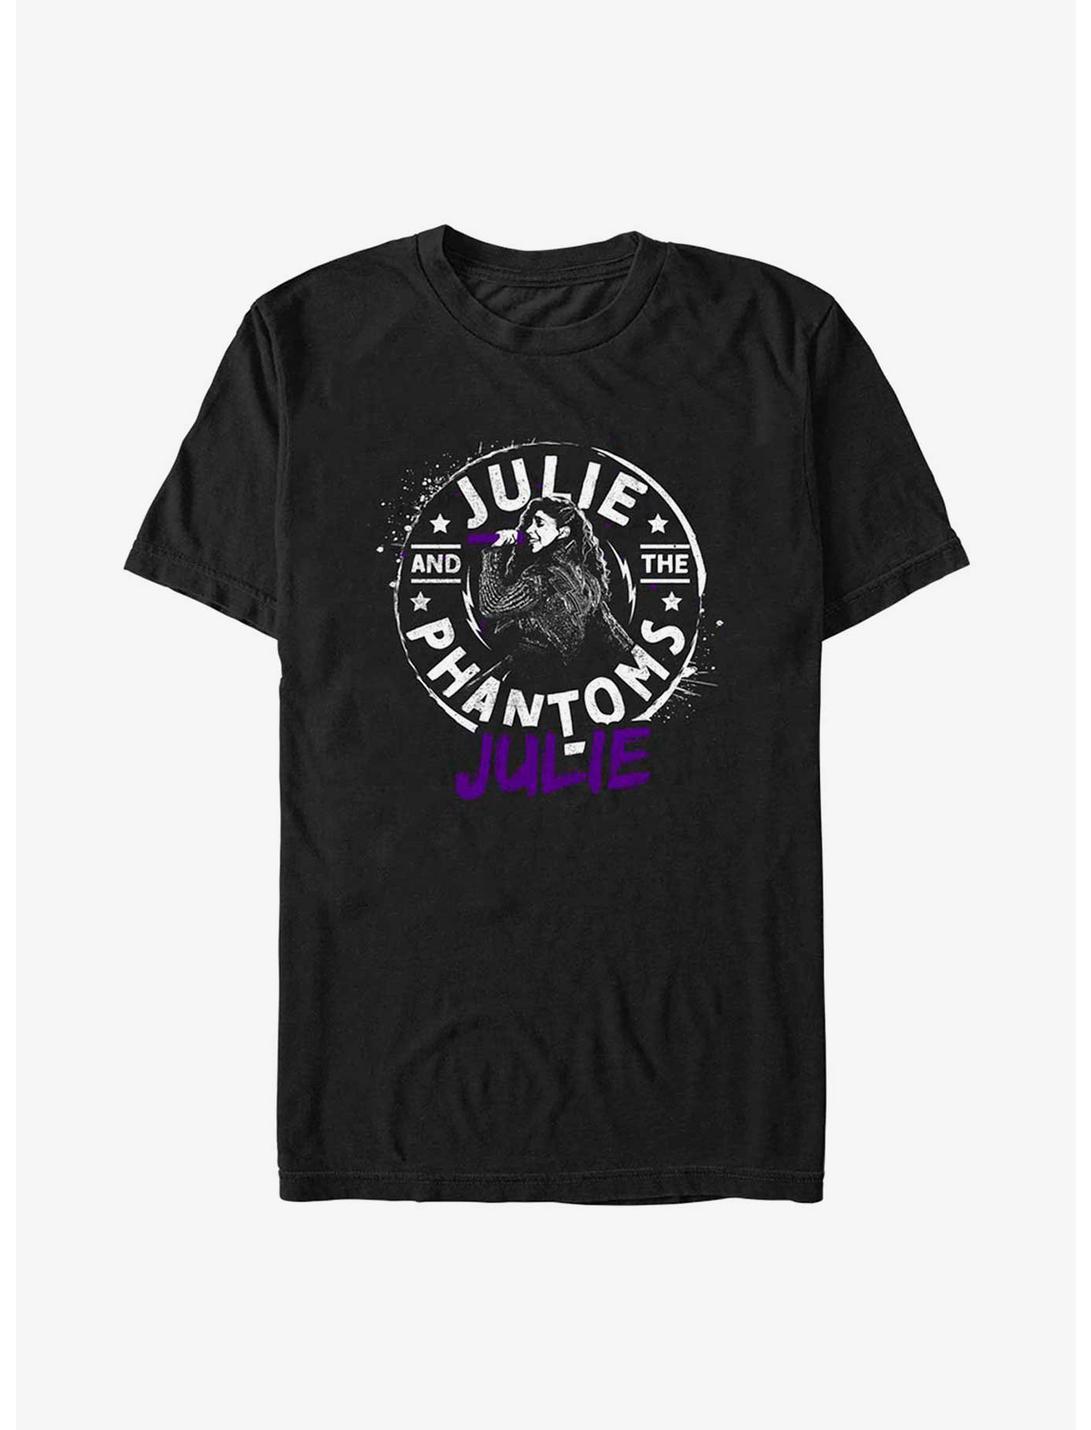 Julie And The Phantoms Grunge T-Shirt, BLACK, hi-res